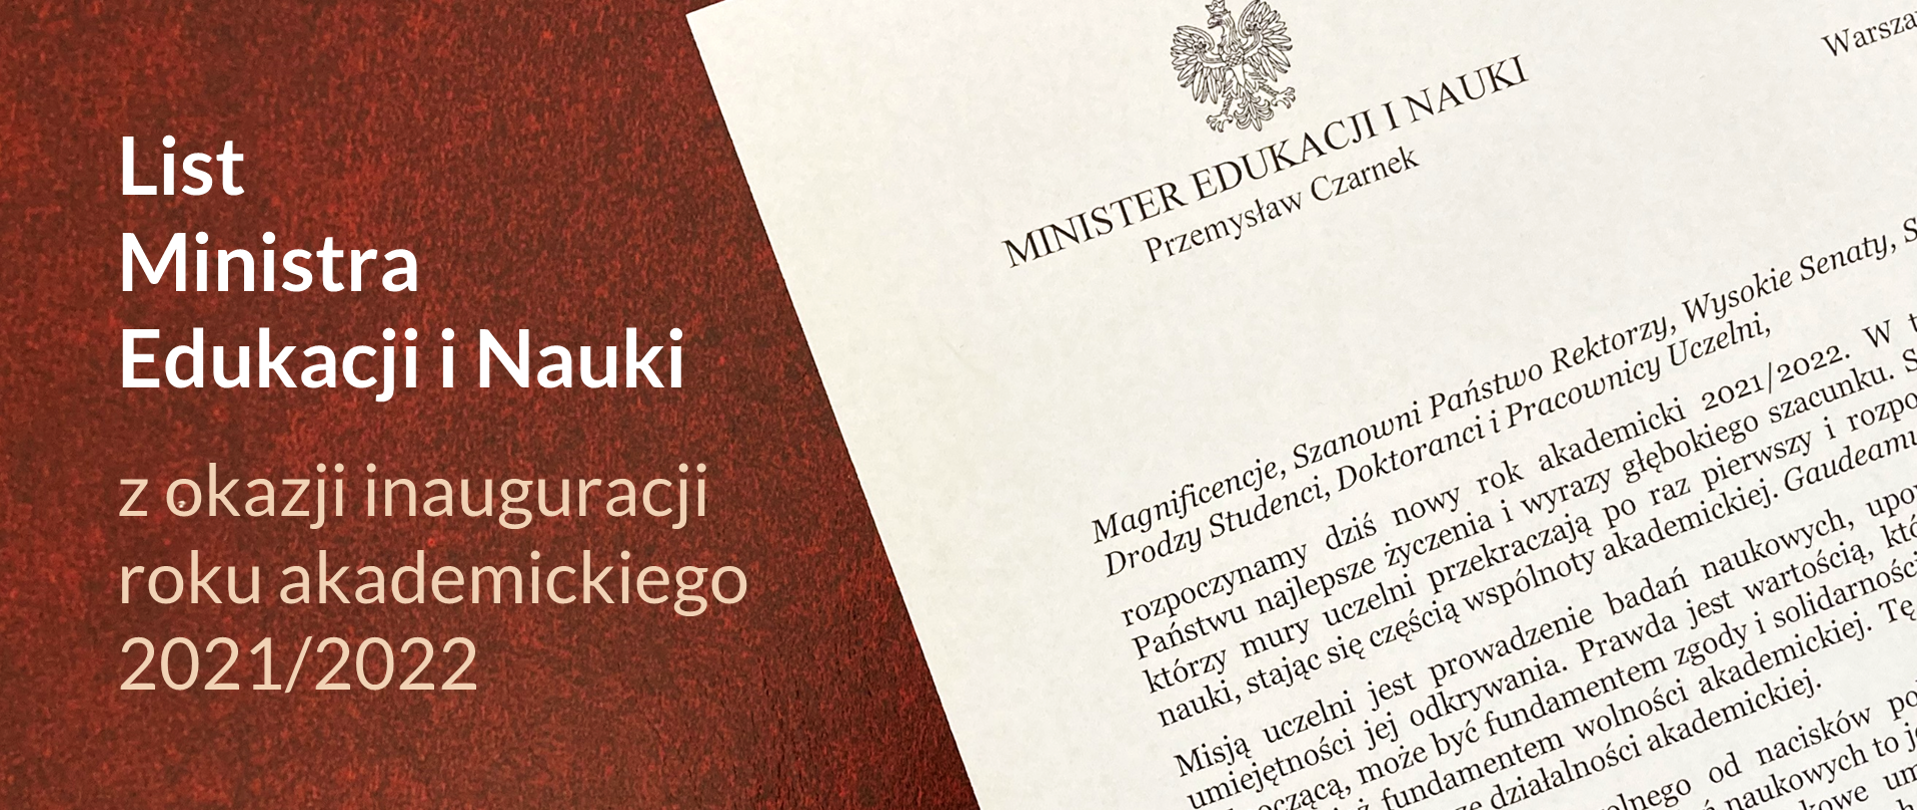 List Ministra Edukacji i Nauki z okazji inauguracji roku akademickiego 2021/2022